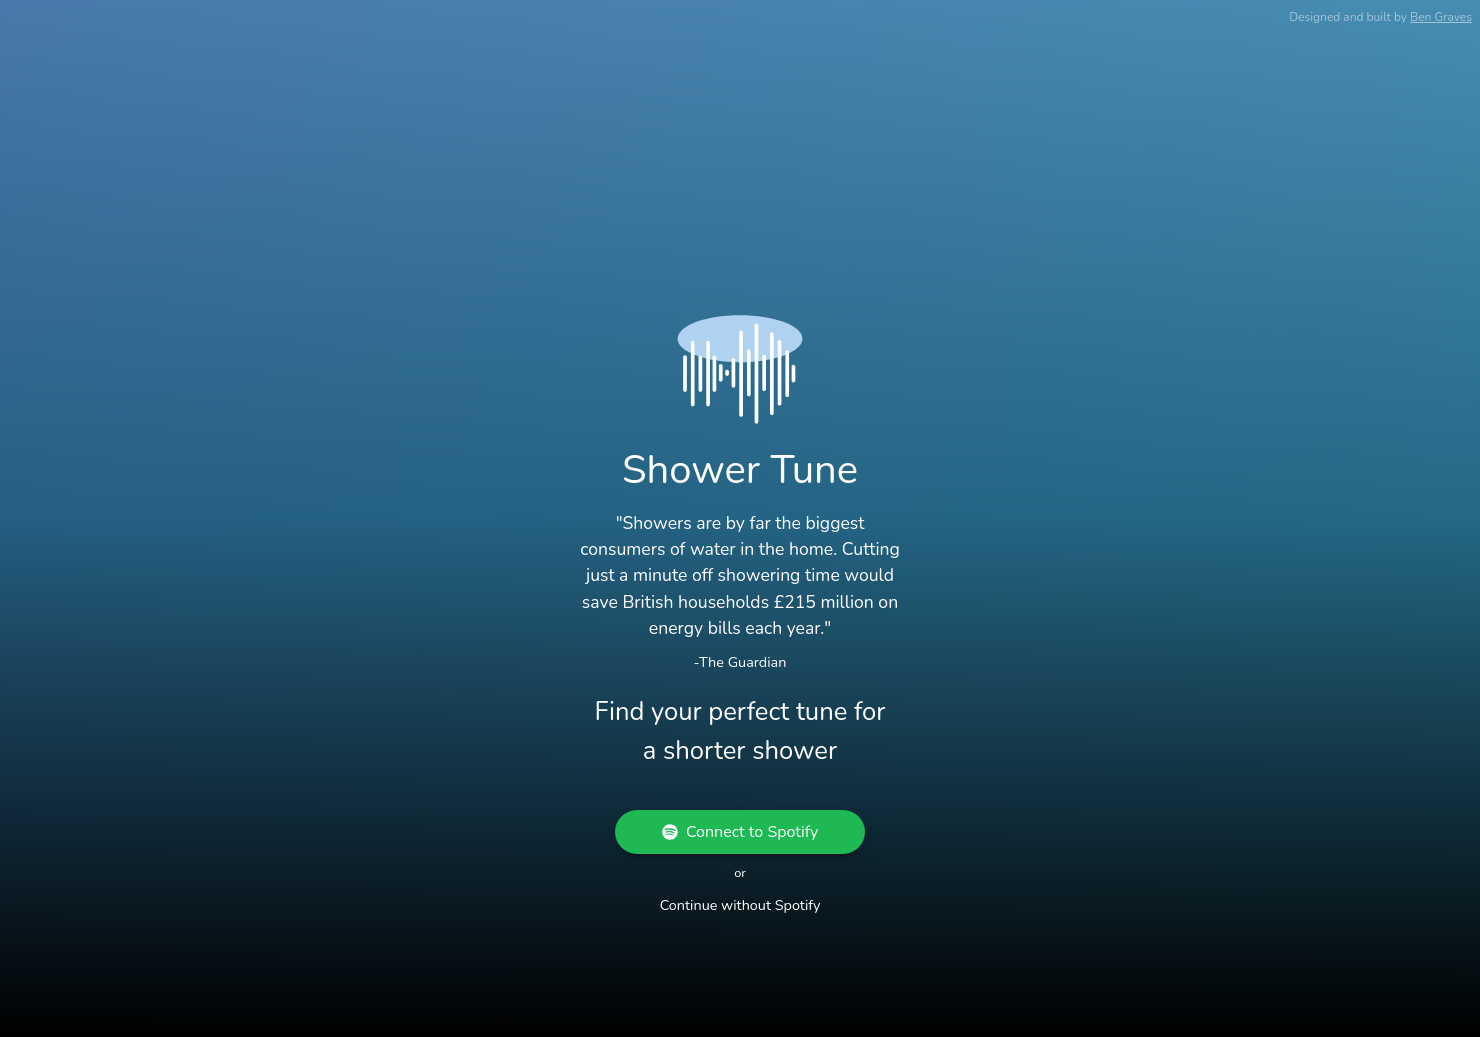 Shower Tune